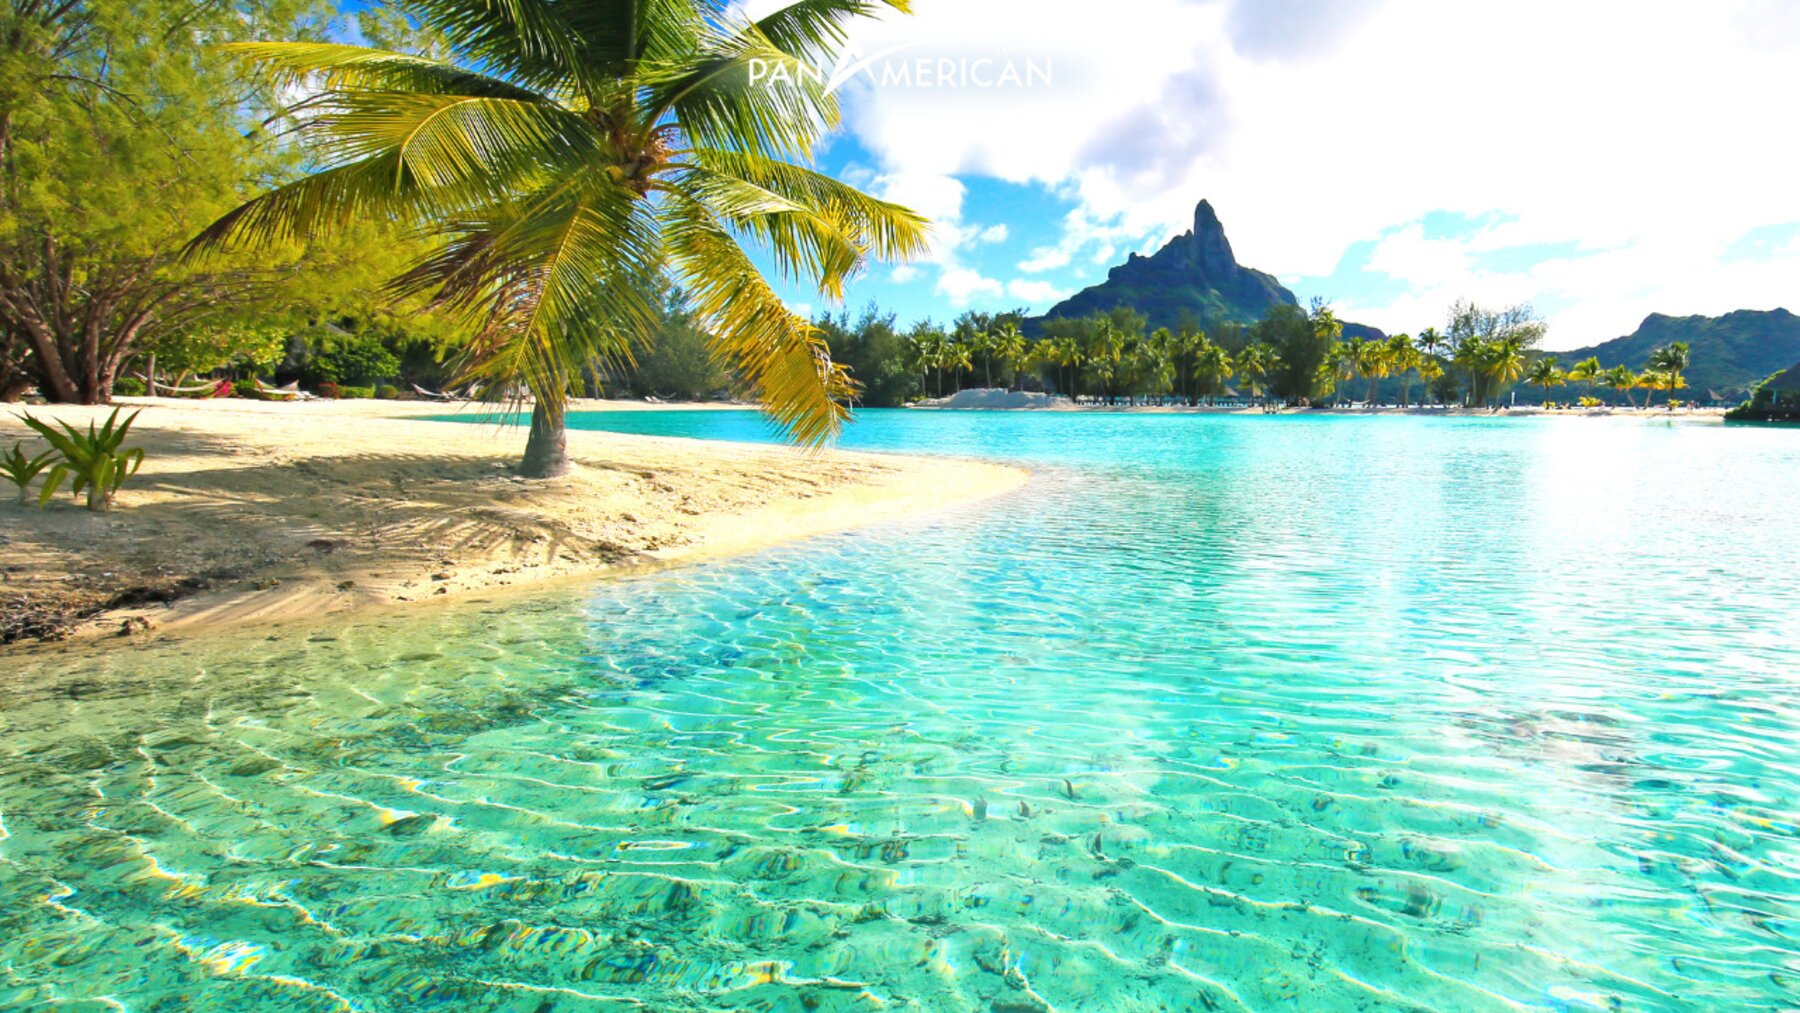 Làn nước xanh trong như ngọc của đảo Bora Bora